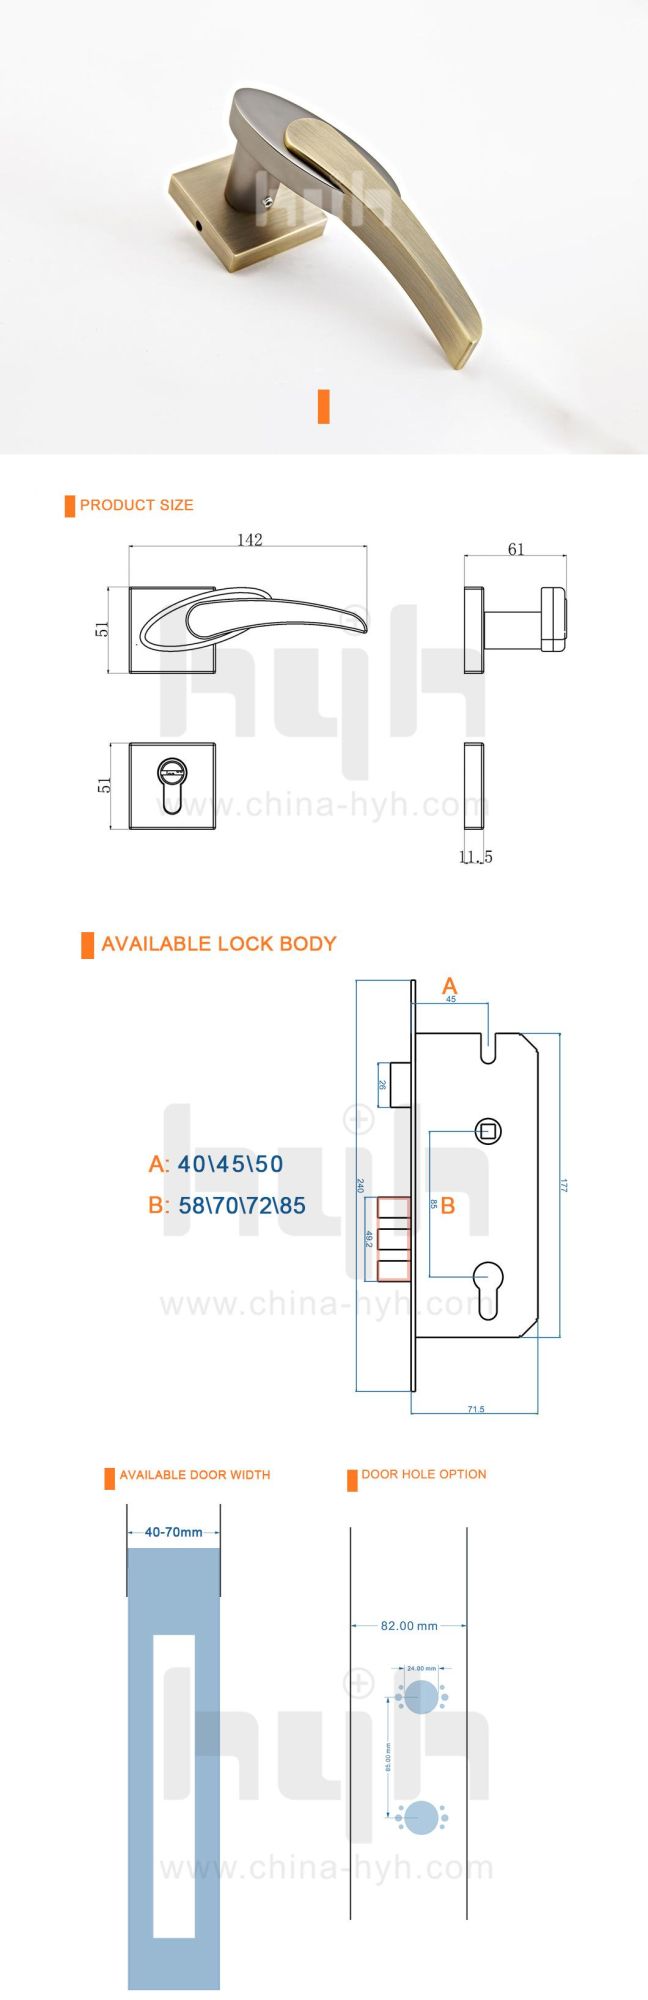 Hyh Brand Modern Design Zamak Indoor Door Locks